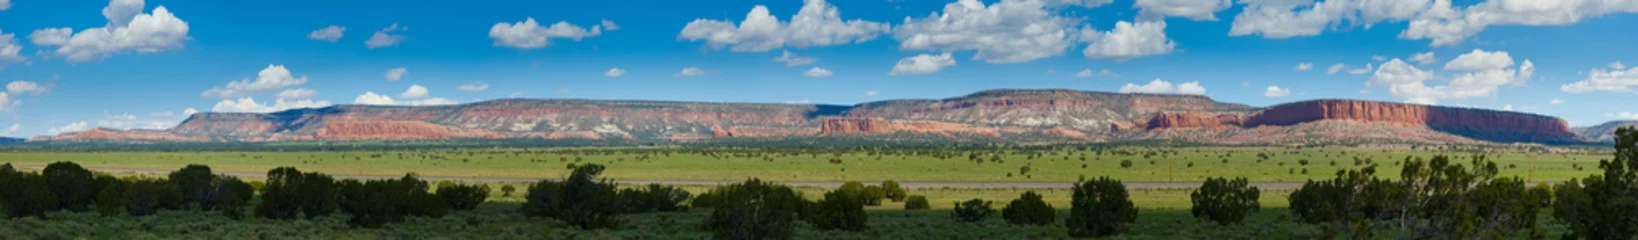 Fotobehang Rode bergen van Arizona - panorama © gijones